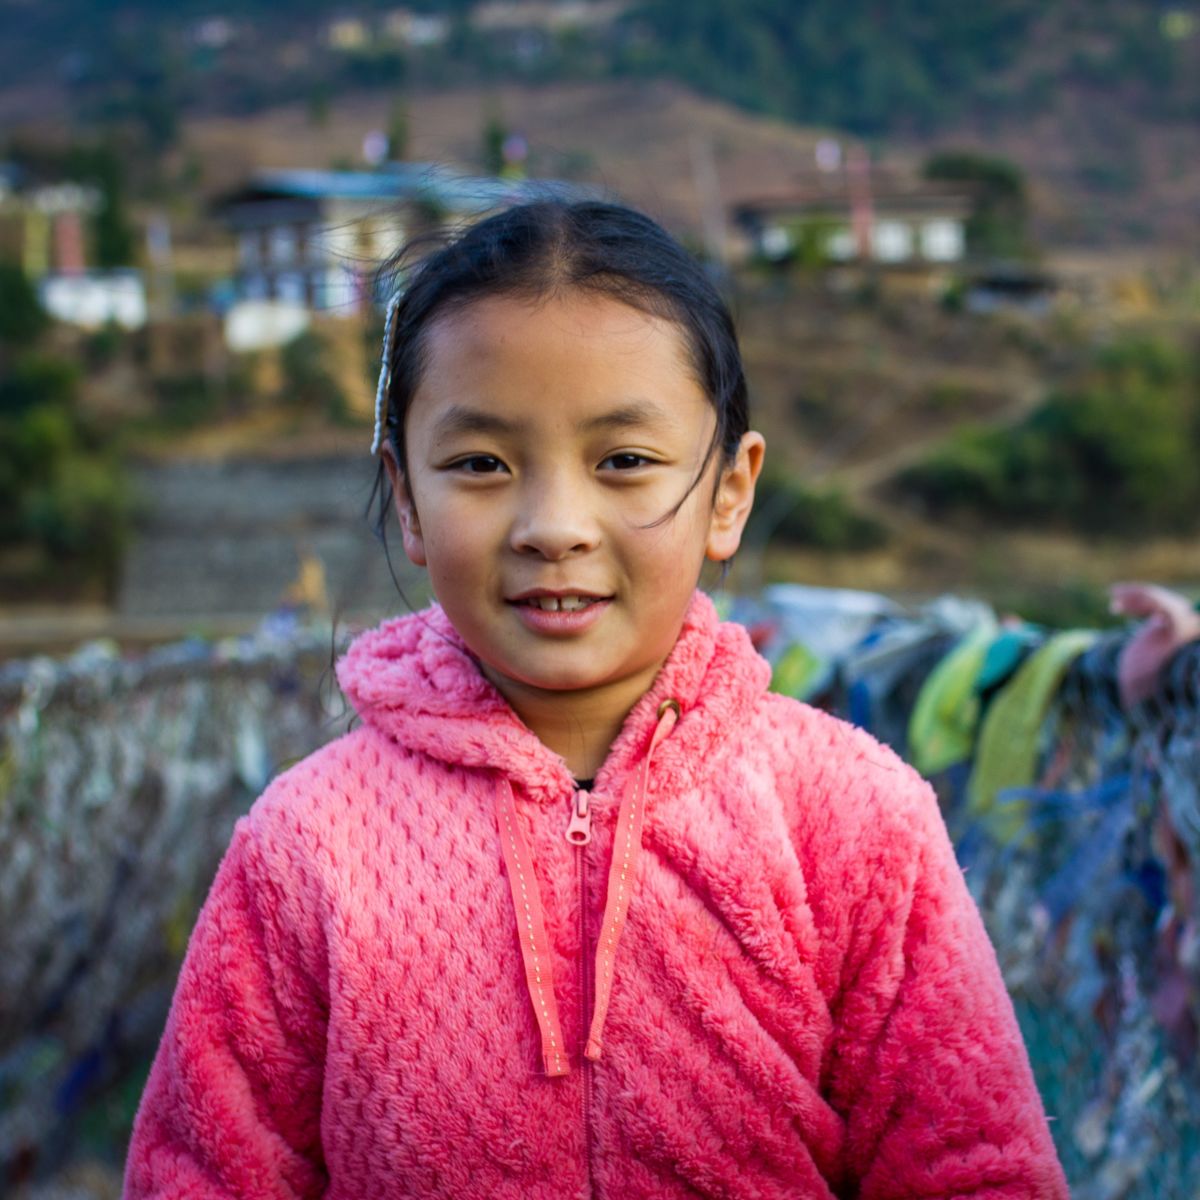 Bhutan girl in pink hoodie